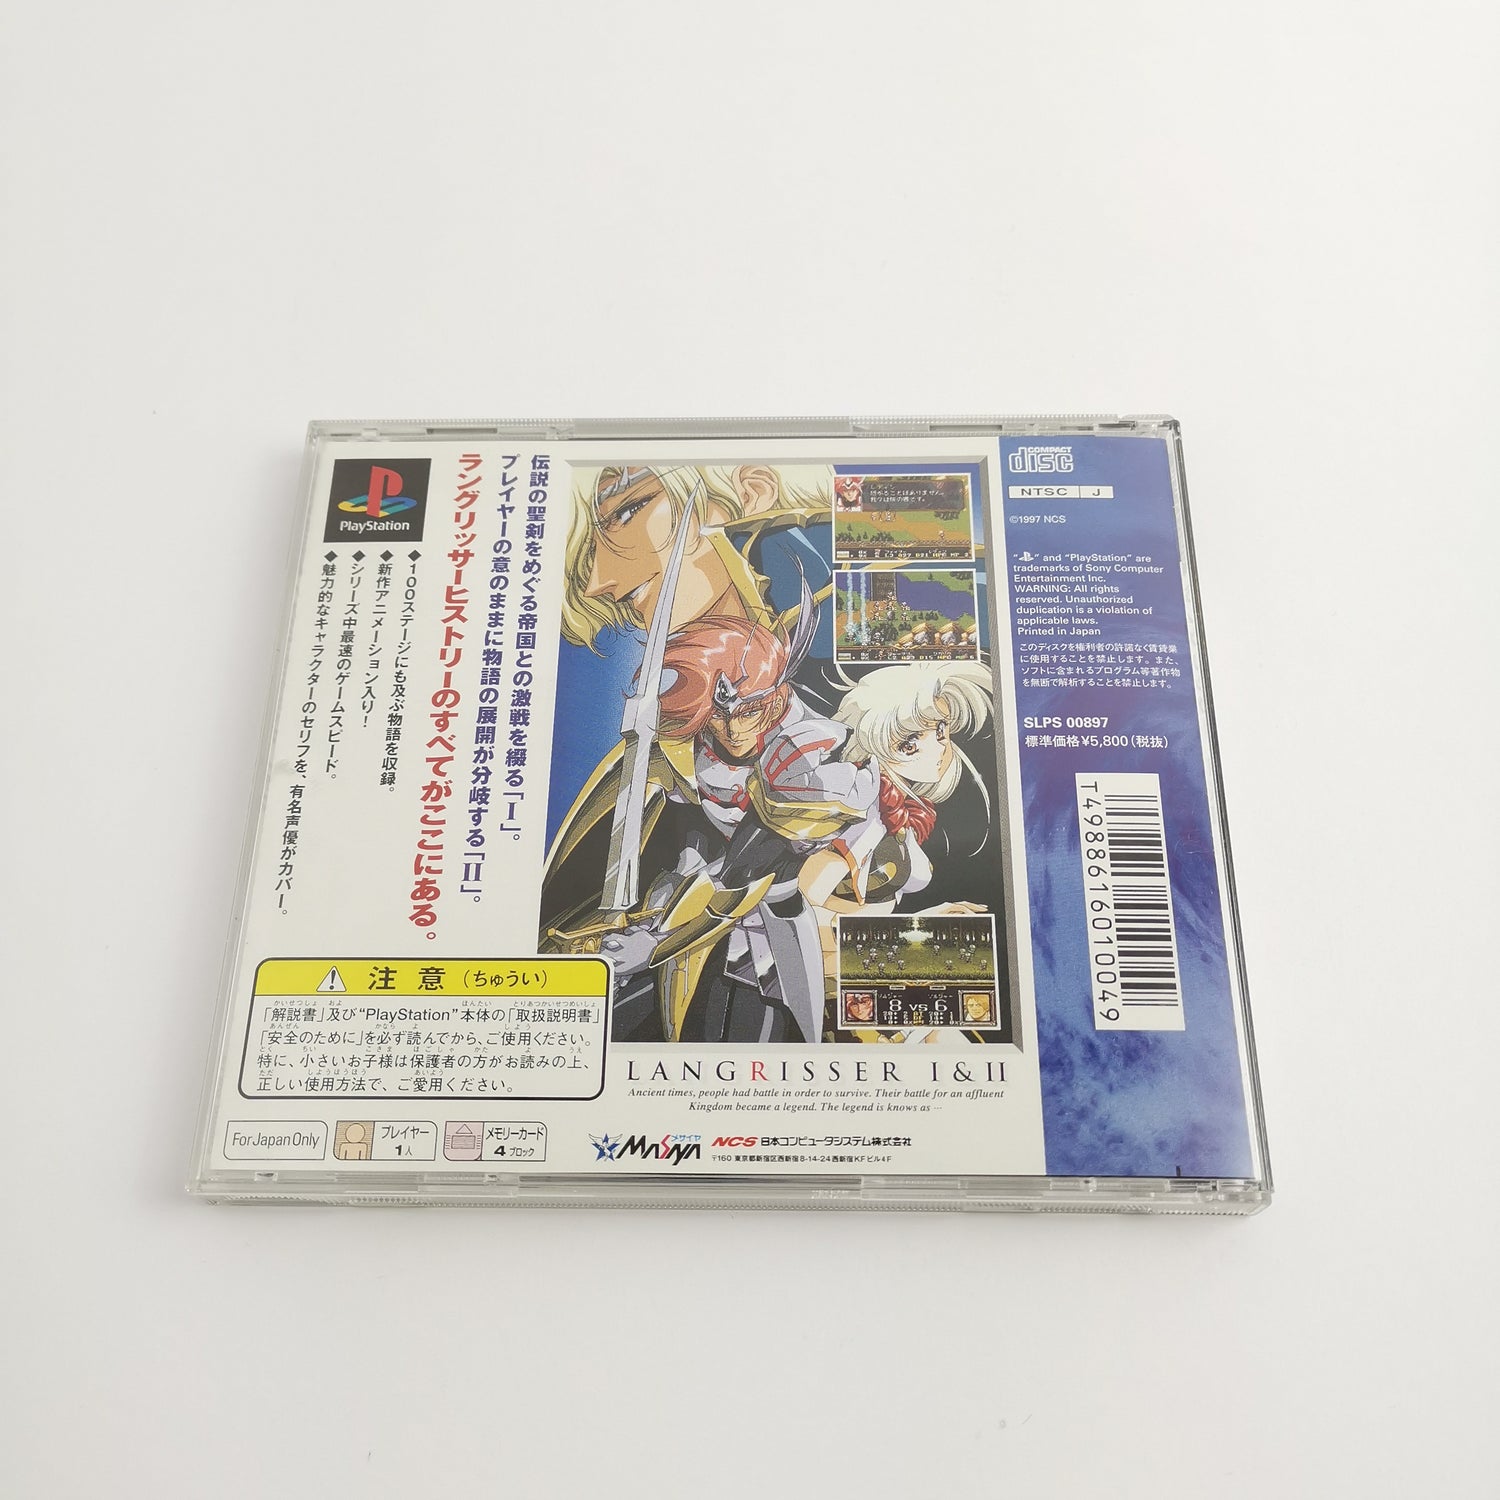 Sony Playstation 1 Game: Langrisser I & II | PS1 PSX - NTSC-J Japan